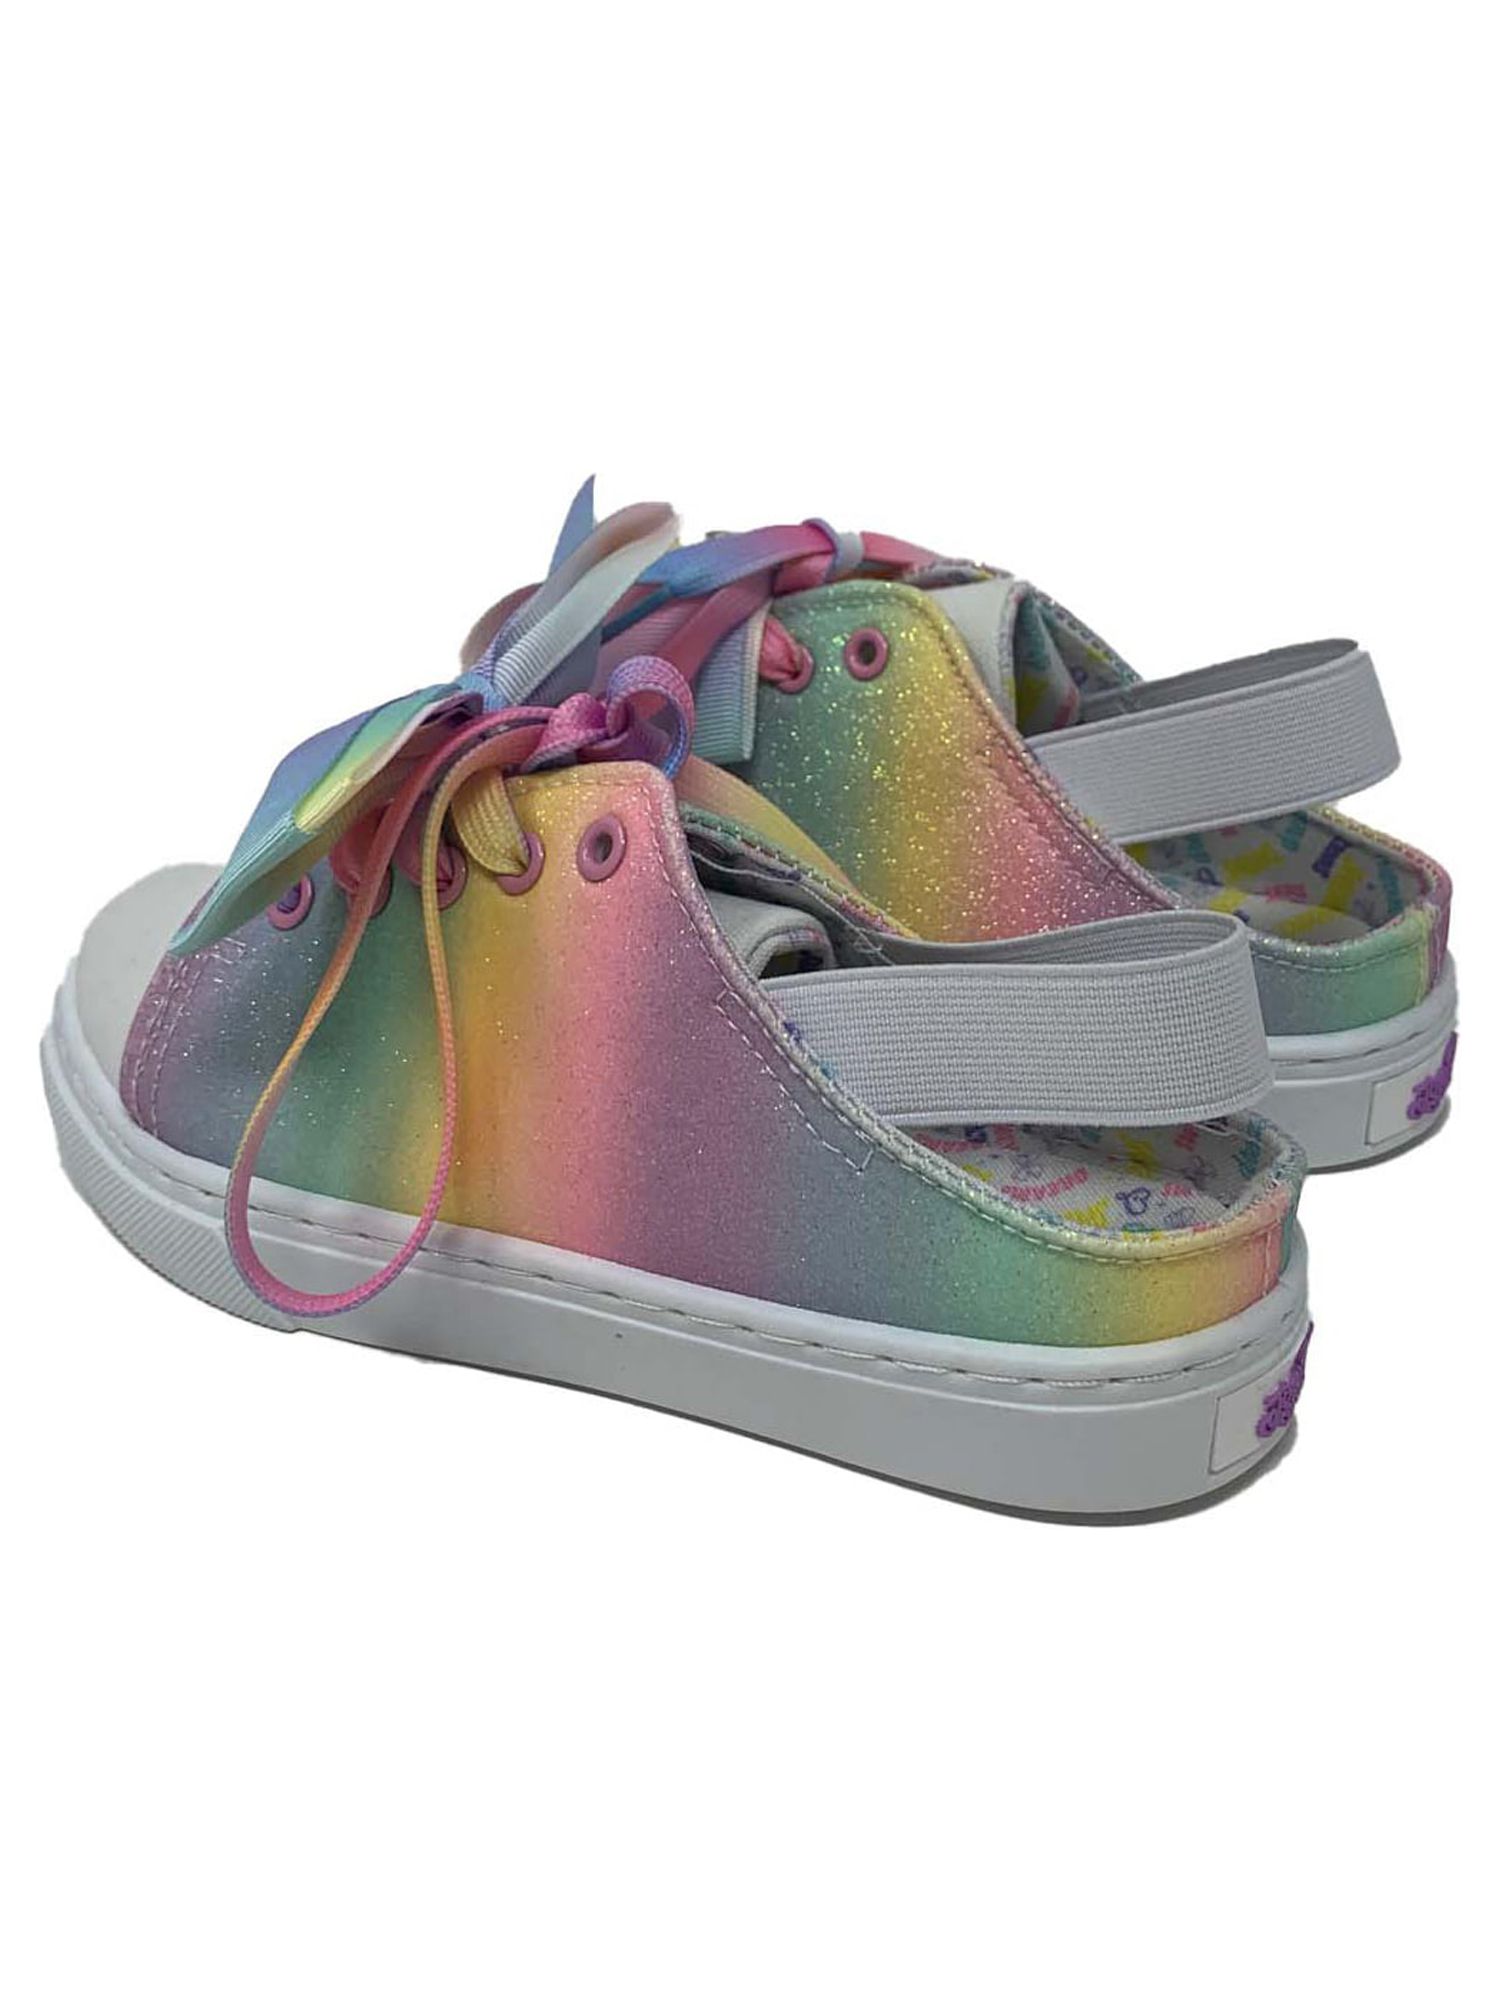 Toddler Jojo Siwa Glitter Sling Back Low Top Sneaker (Toddler Girls) - image 5 of 6